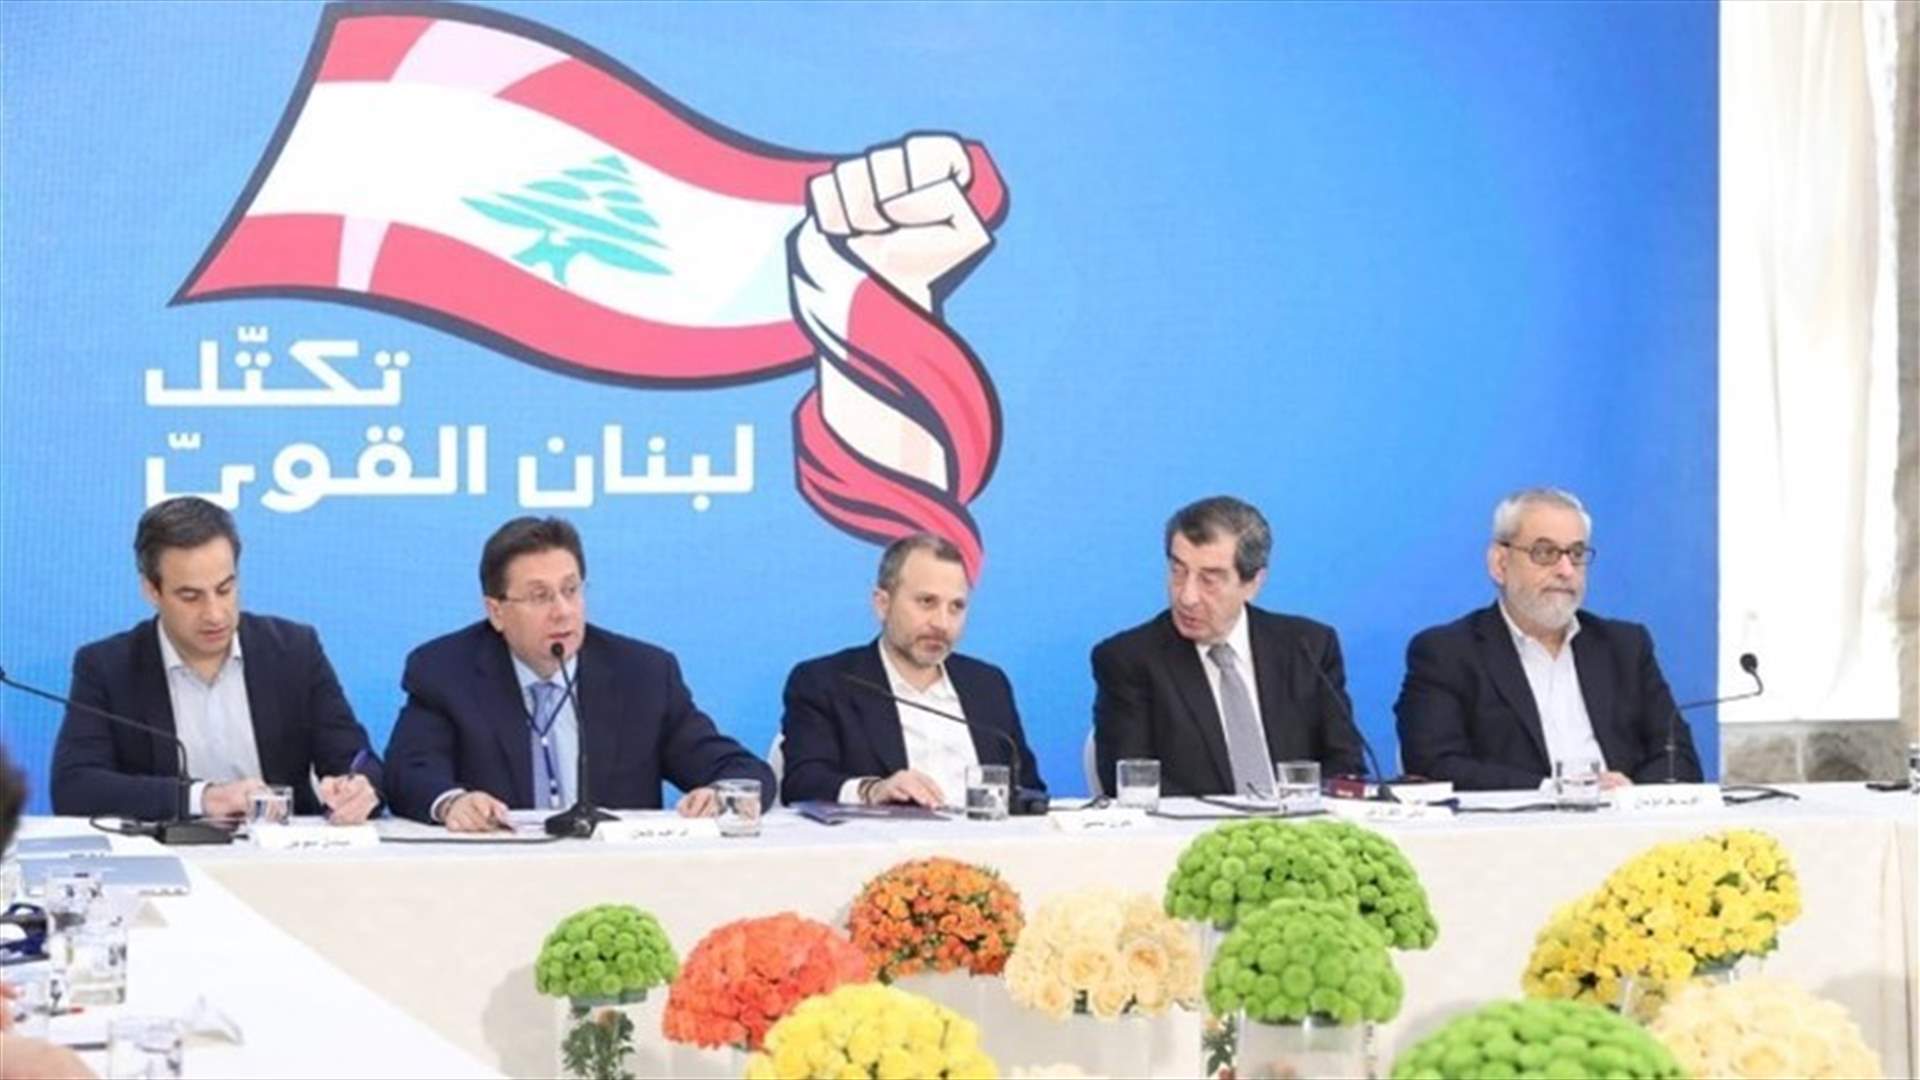 لبنان القوي: للاسراع في المفاوضات بين الحكومة وصندوق النقد وإجراء التعيينات